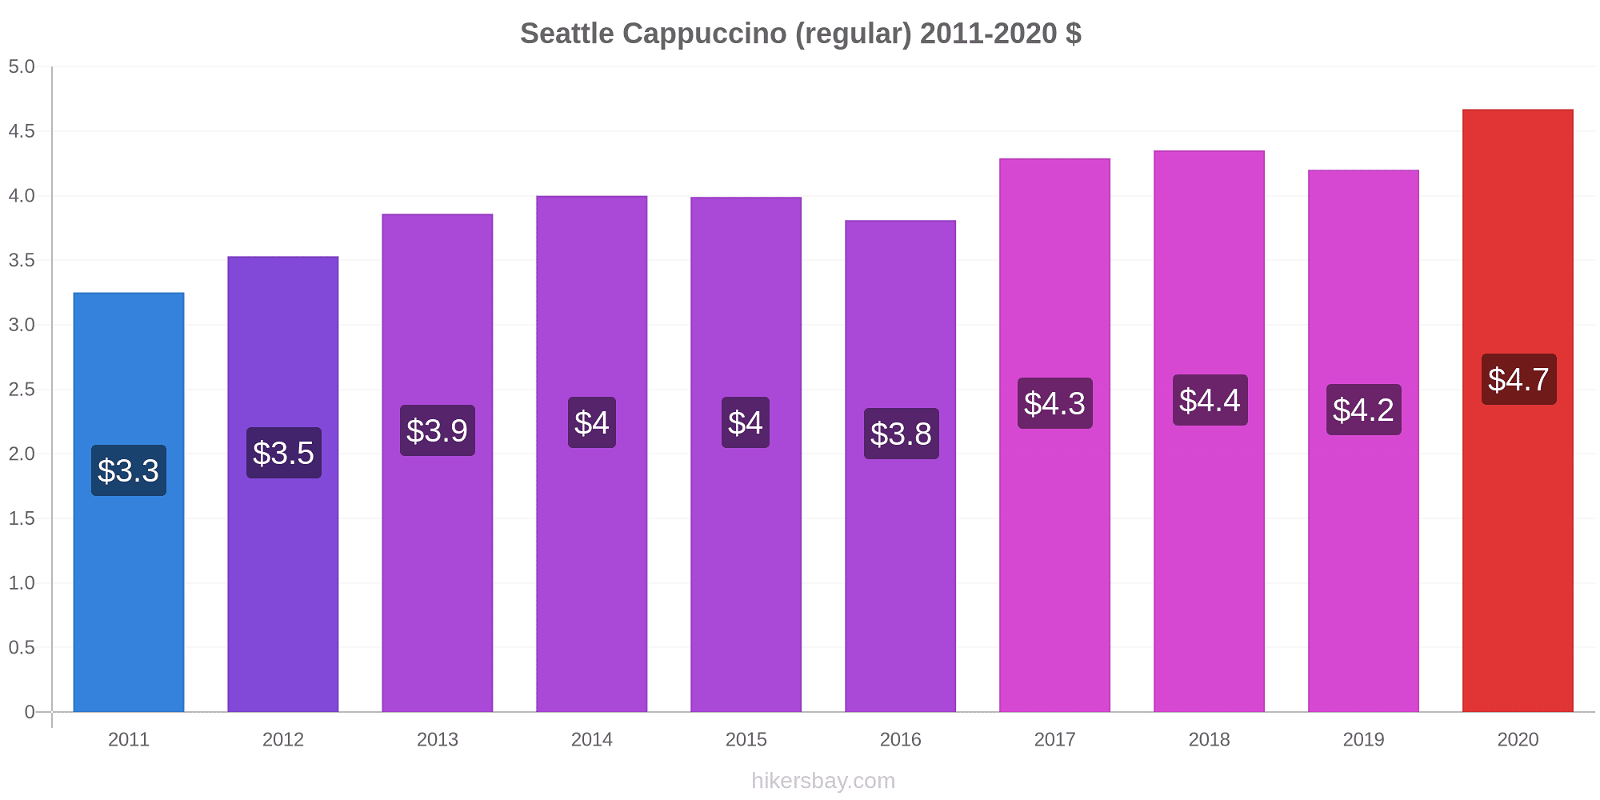 Seattle variação de preço Capuccino (regular) hikersbay.com